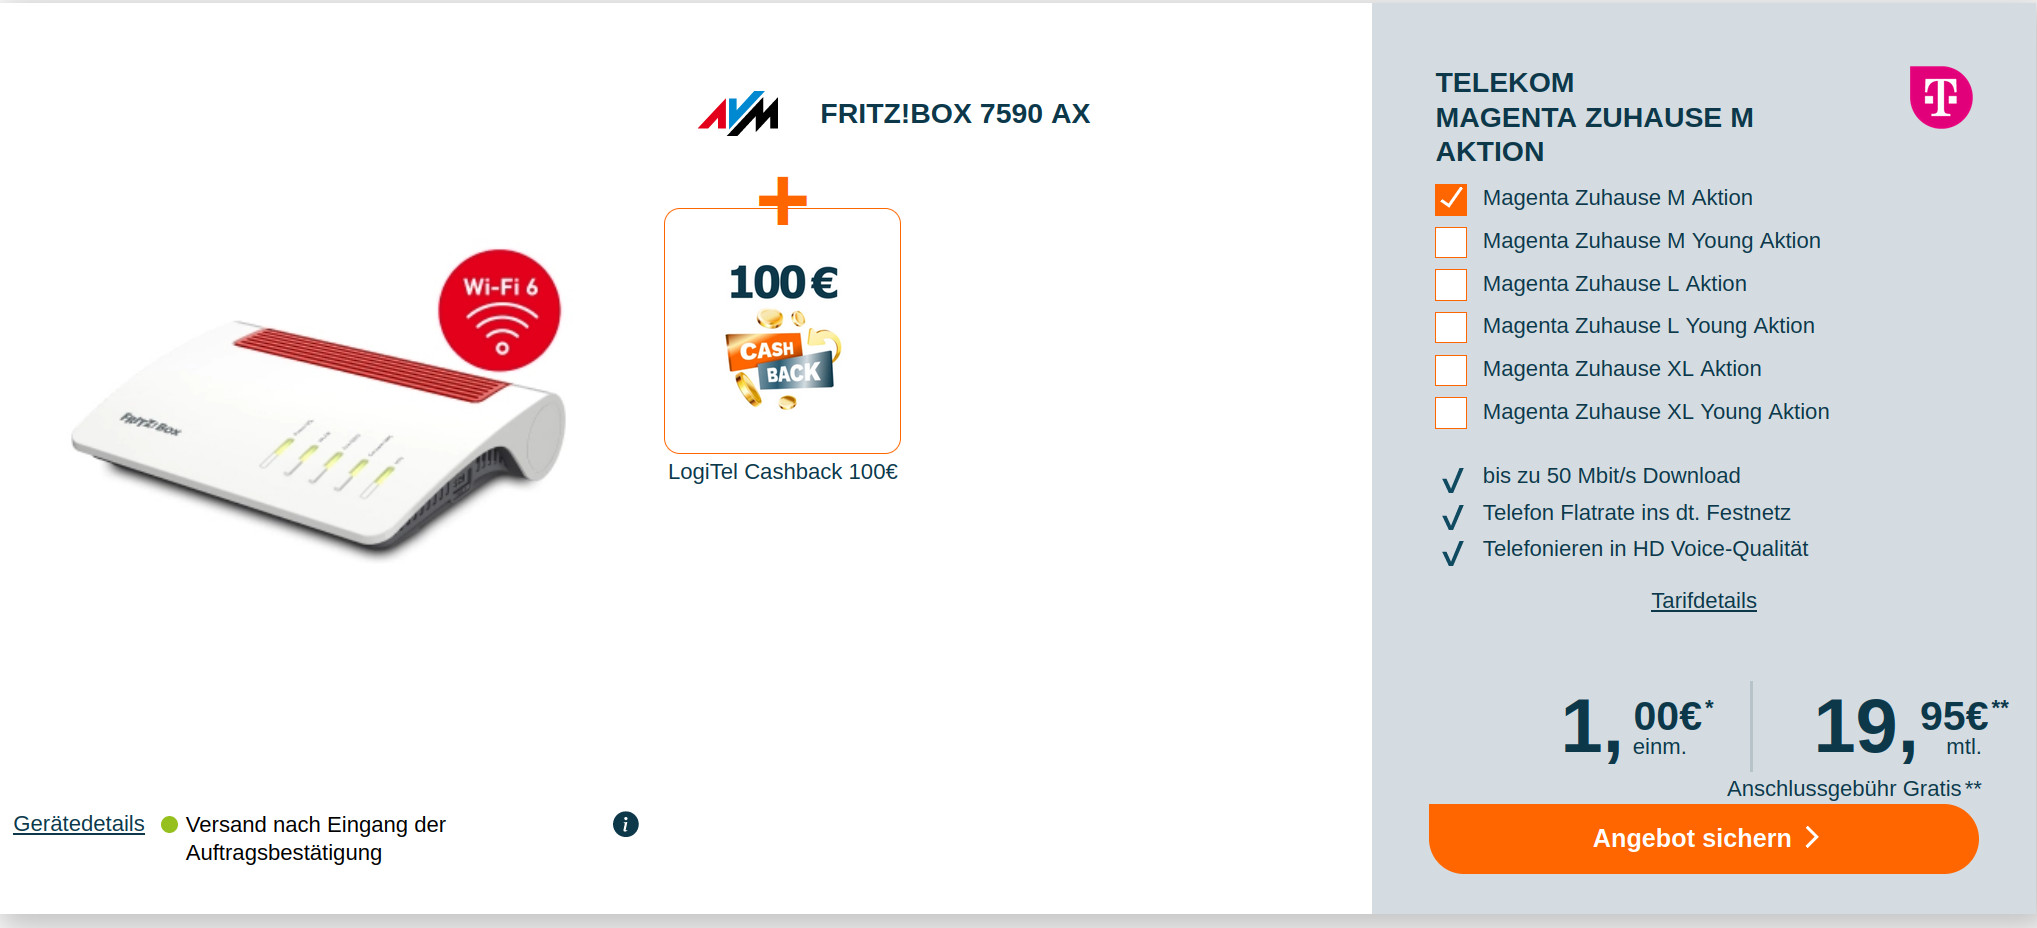 Spartipp Telekom Magenta Zuhause: 100 Euro Cashback plus Fritzbox 7590 AX mit Magenta Tarif für mtl. 19,95 Euro